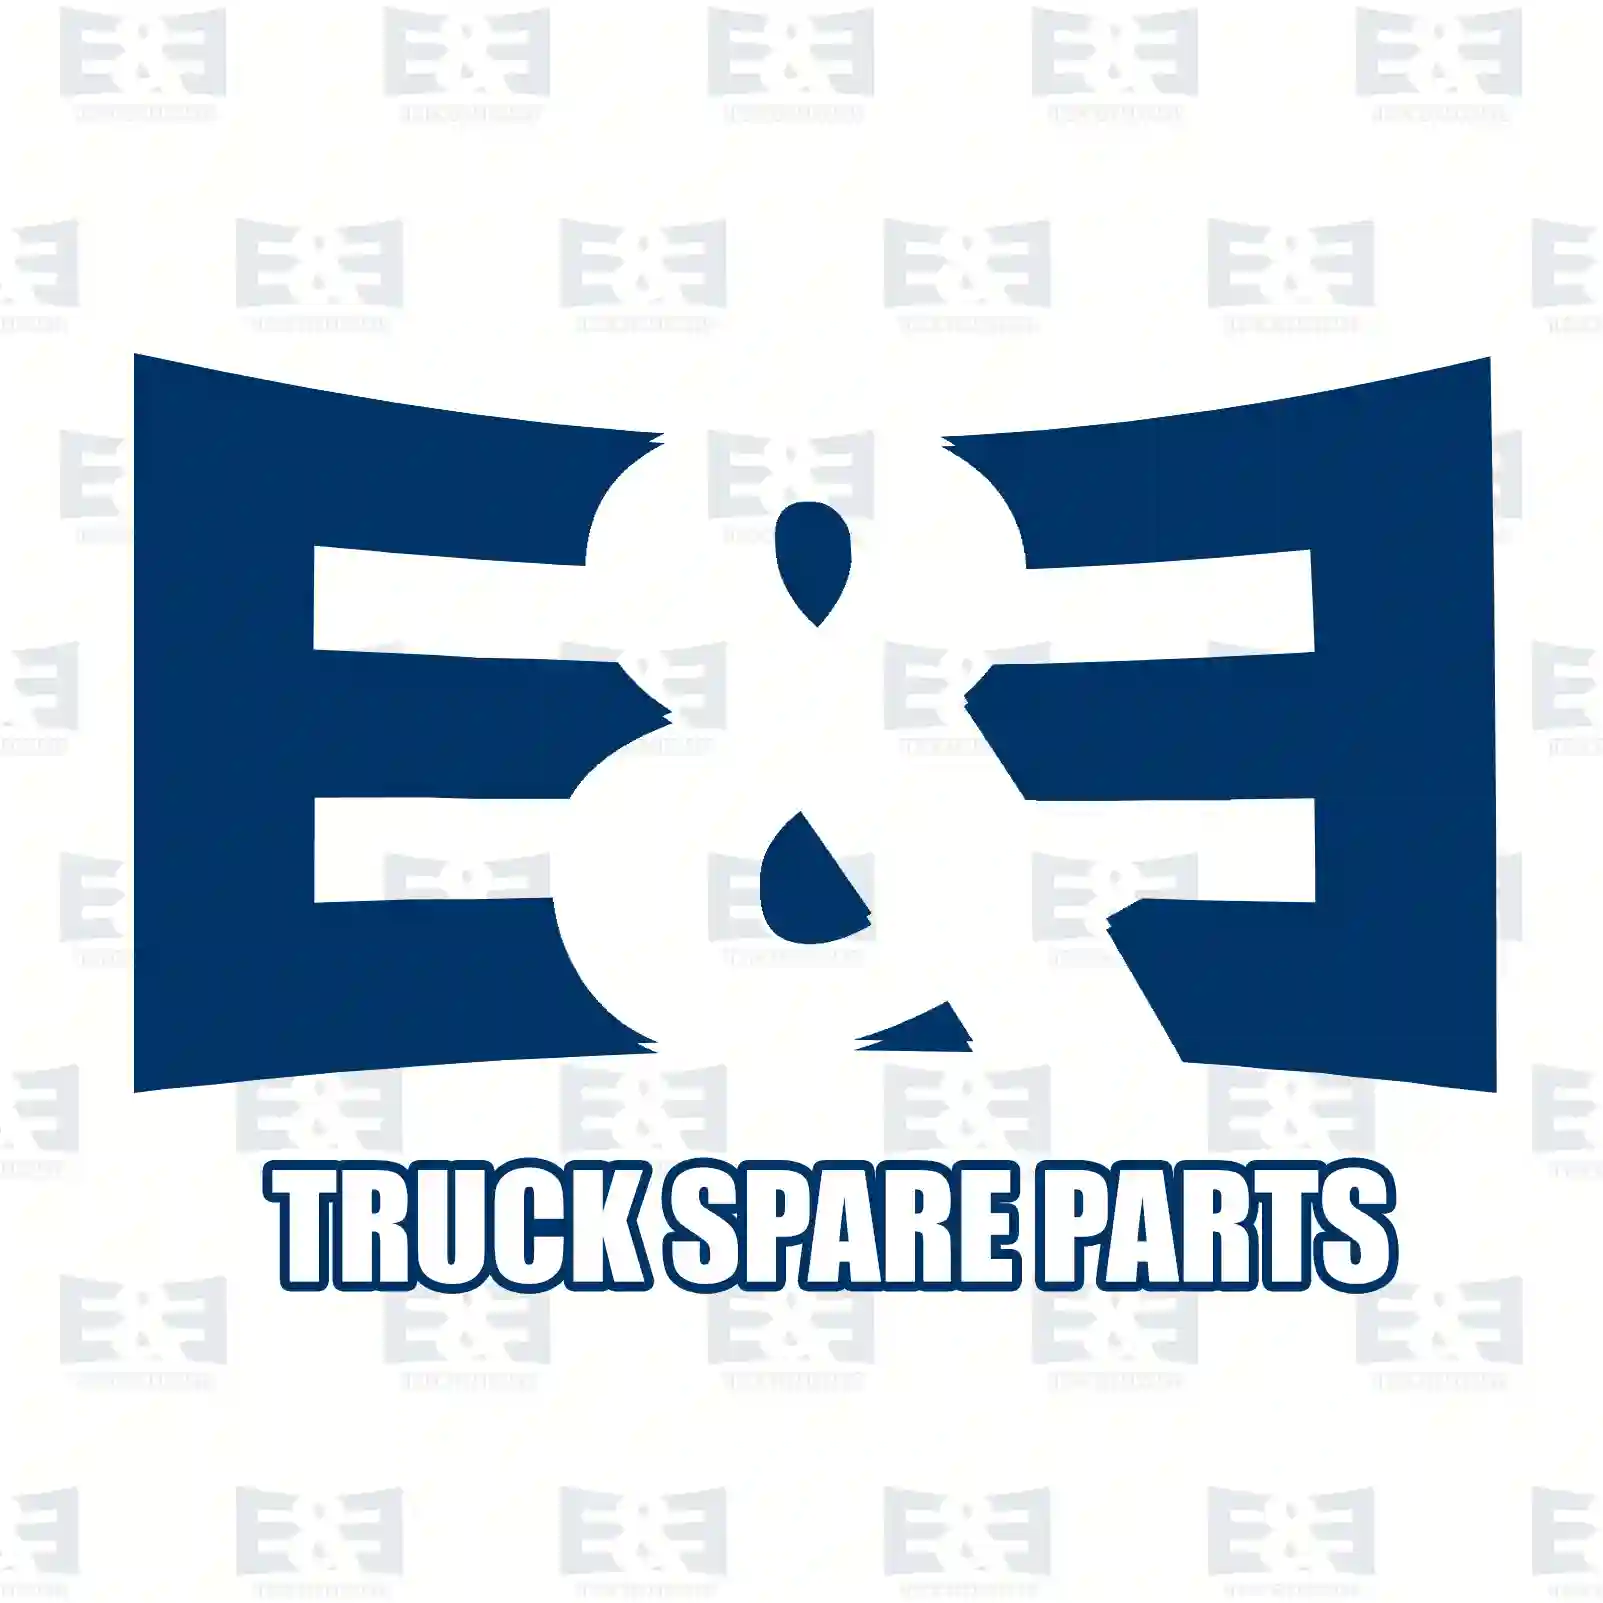 V-belt kit, 2E2286367, 06580412240, 06580422240, 06580432240, 06580472240, 06580722402, 06580732402, 51968206078, 0079973692, 3178230, ZG02382-0008 ||  2E2286367 E&E Truck Spare Parts | Truck Spare Parts, Auotomotive Spare Parts V-belt kit, 2E2286367, 06580412240, 06580422240, 06580432240, 06580472240, 06580722402, 06580732402, 51968206078, 0079973692, 3178230, ZG02382-0008 ||  2E2286367 E&E Truck Spare Parts | Truck Spare Parts, Auotomotive Spare Parts